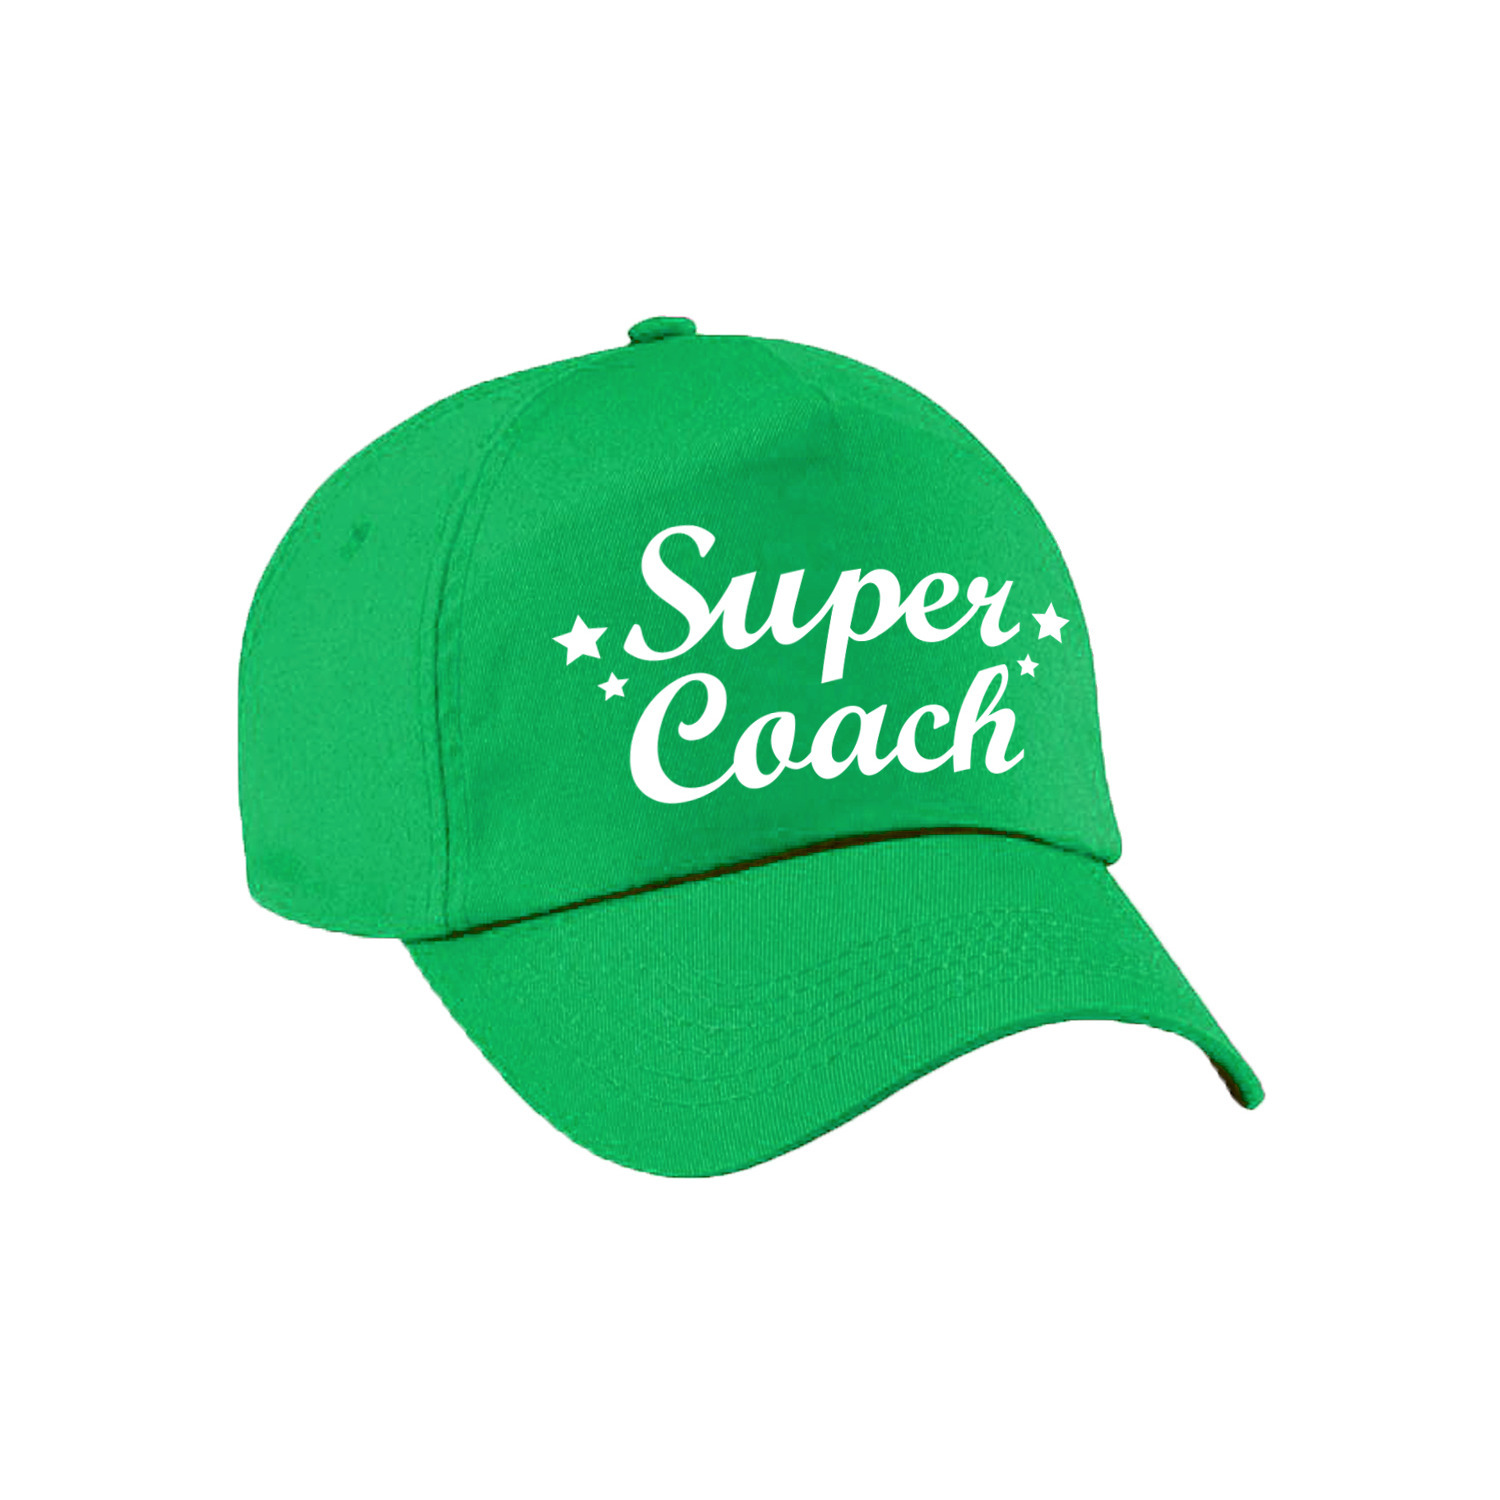 Super coach cadeau pet -cap groen voor volwassenen